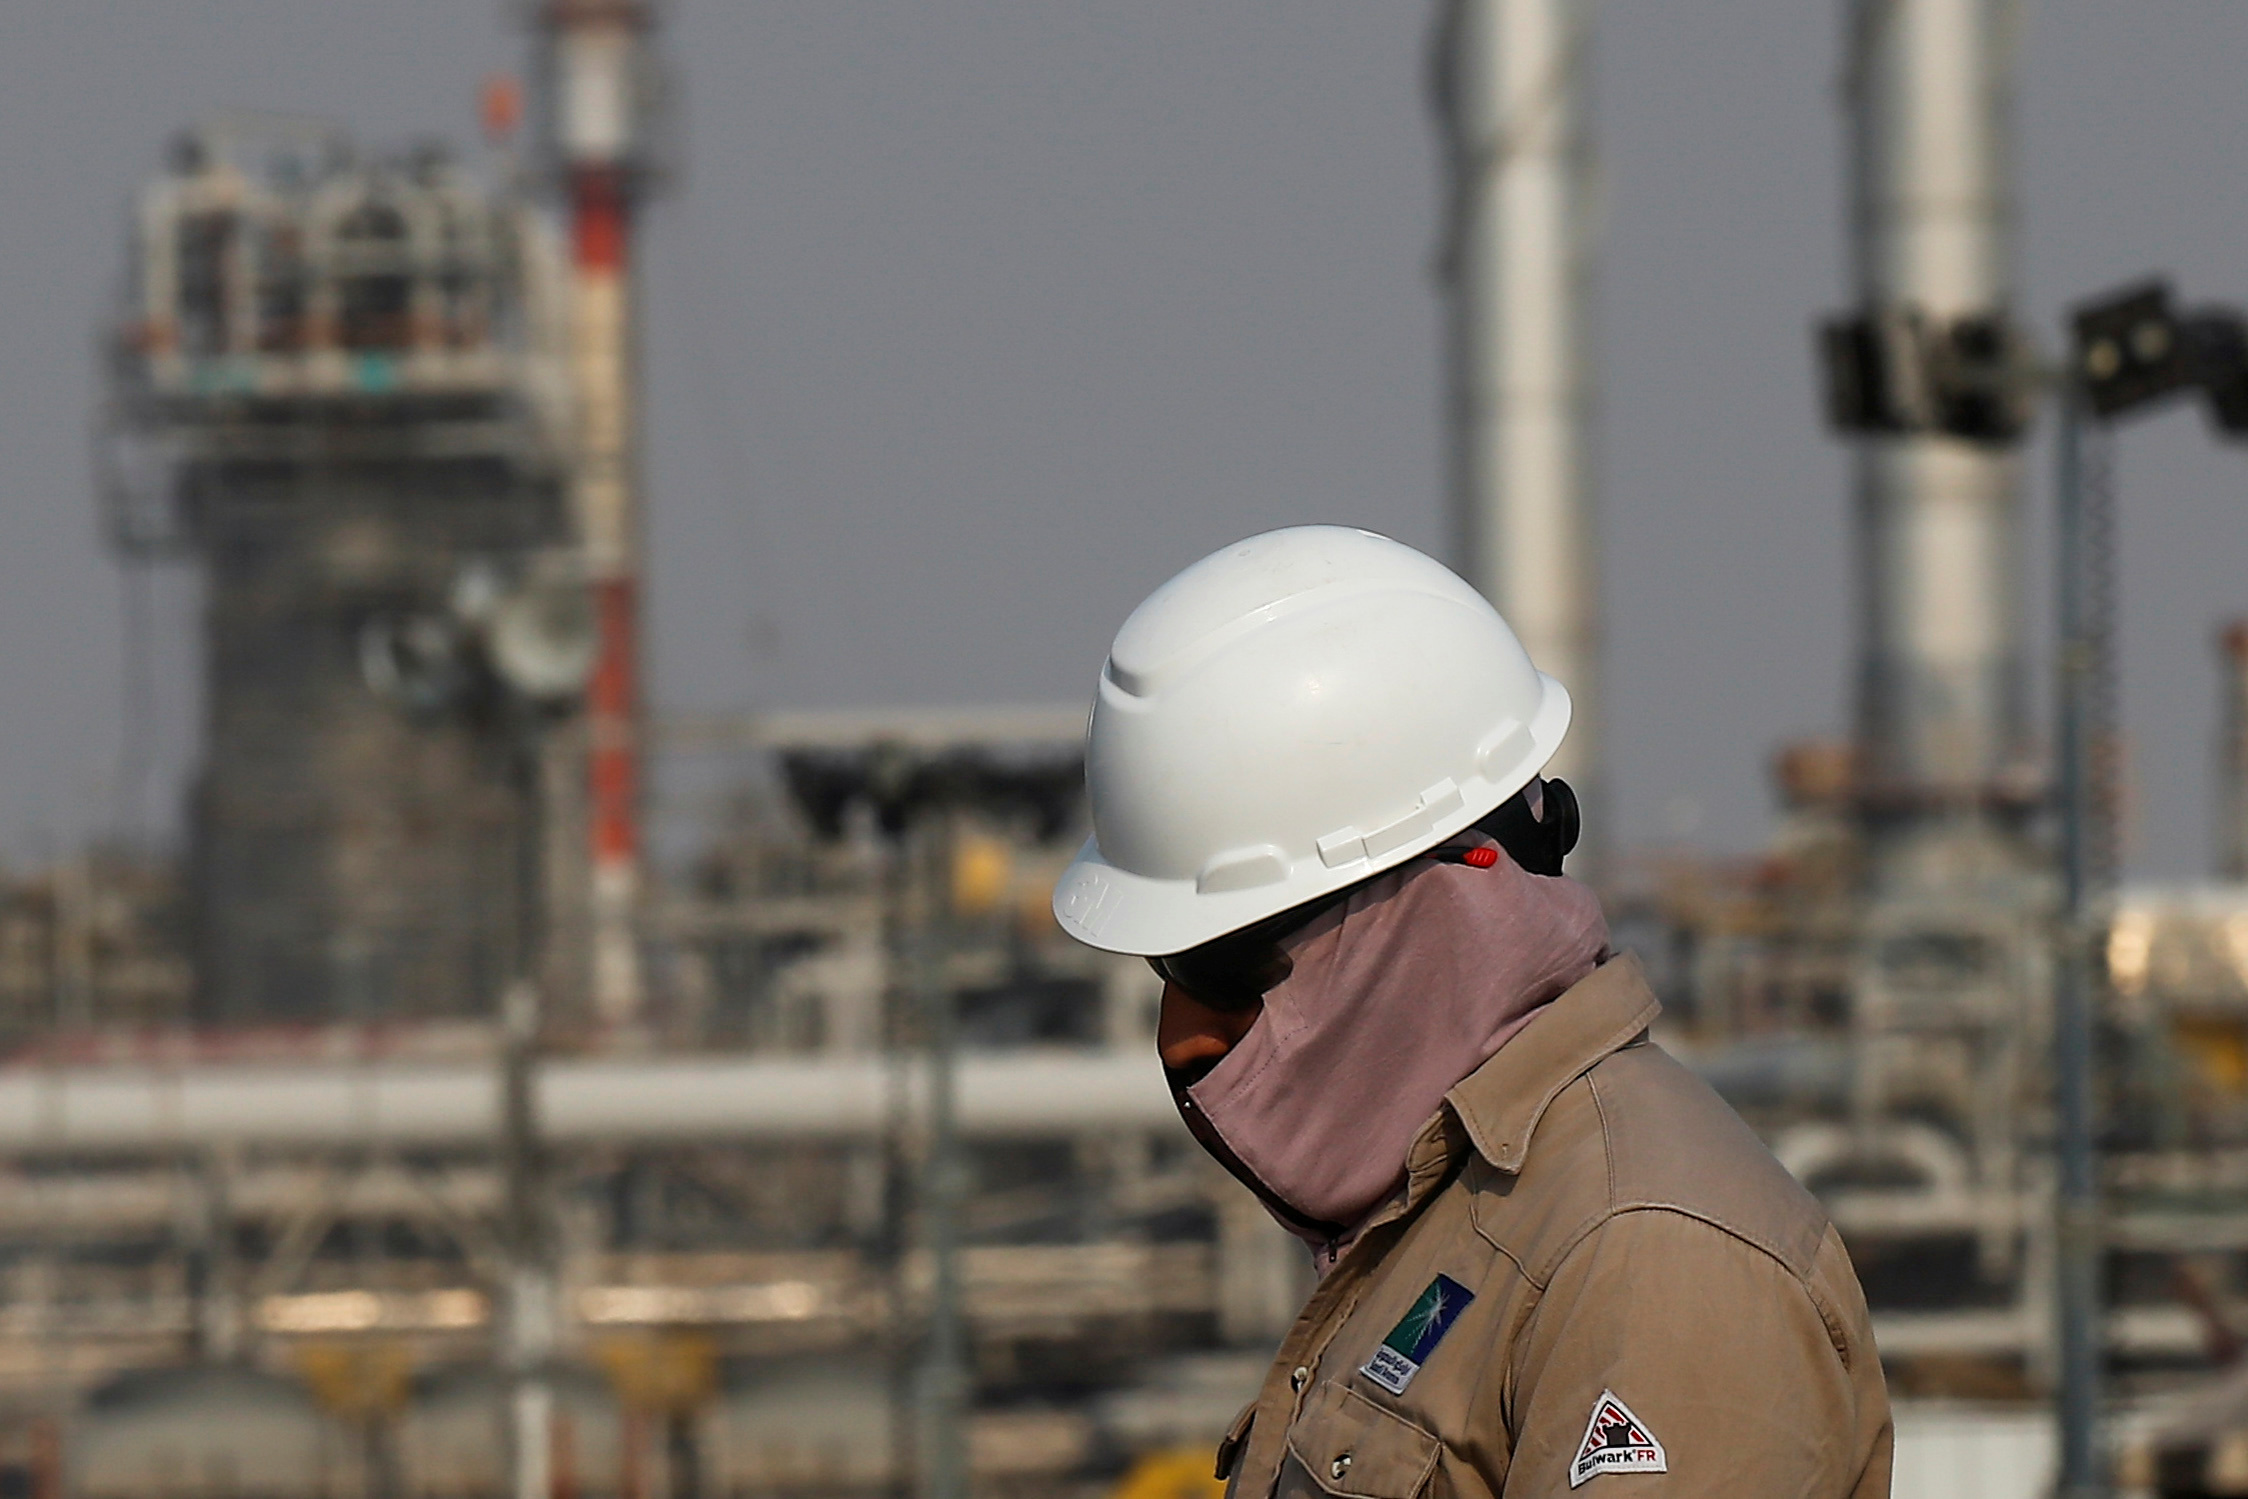 Цены нефть саудовская аравия. Нефтяная компания в Саудовской Аравии Aramco. Саудовская Аравия нефтедобыча. Китай НПЗ Saudi Aramco. Saudi Aramco добыча нефти 2020.